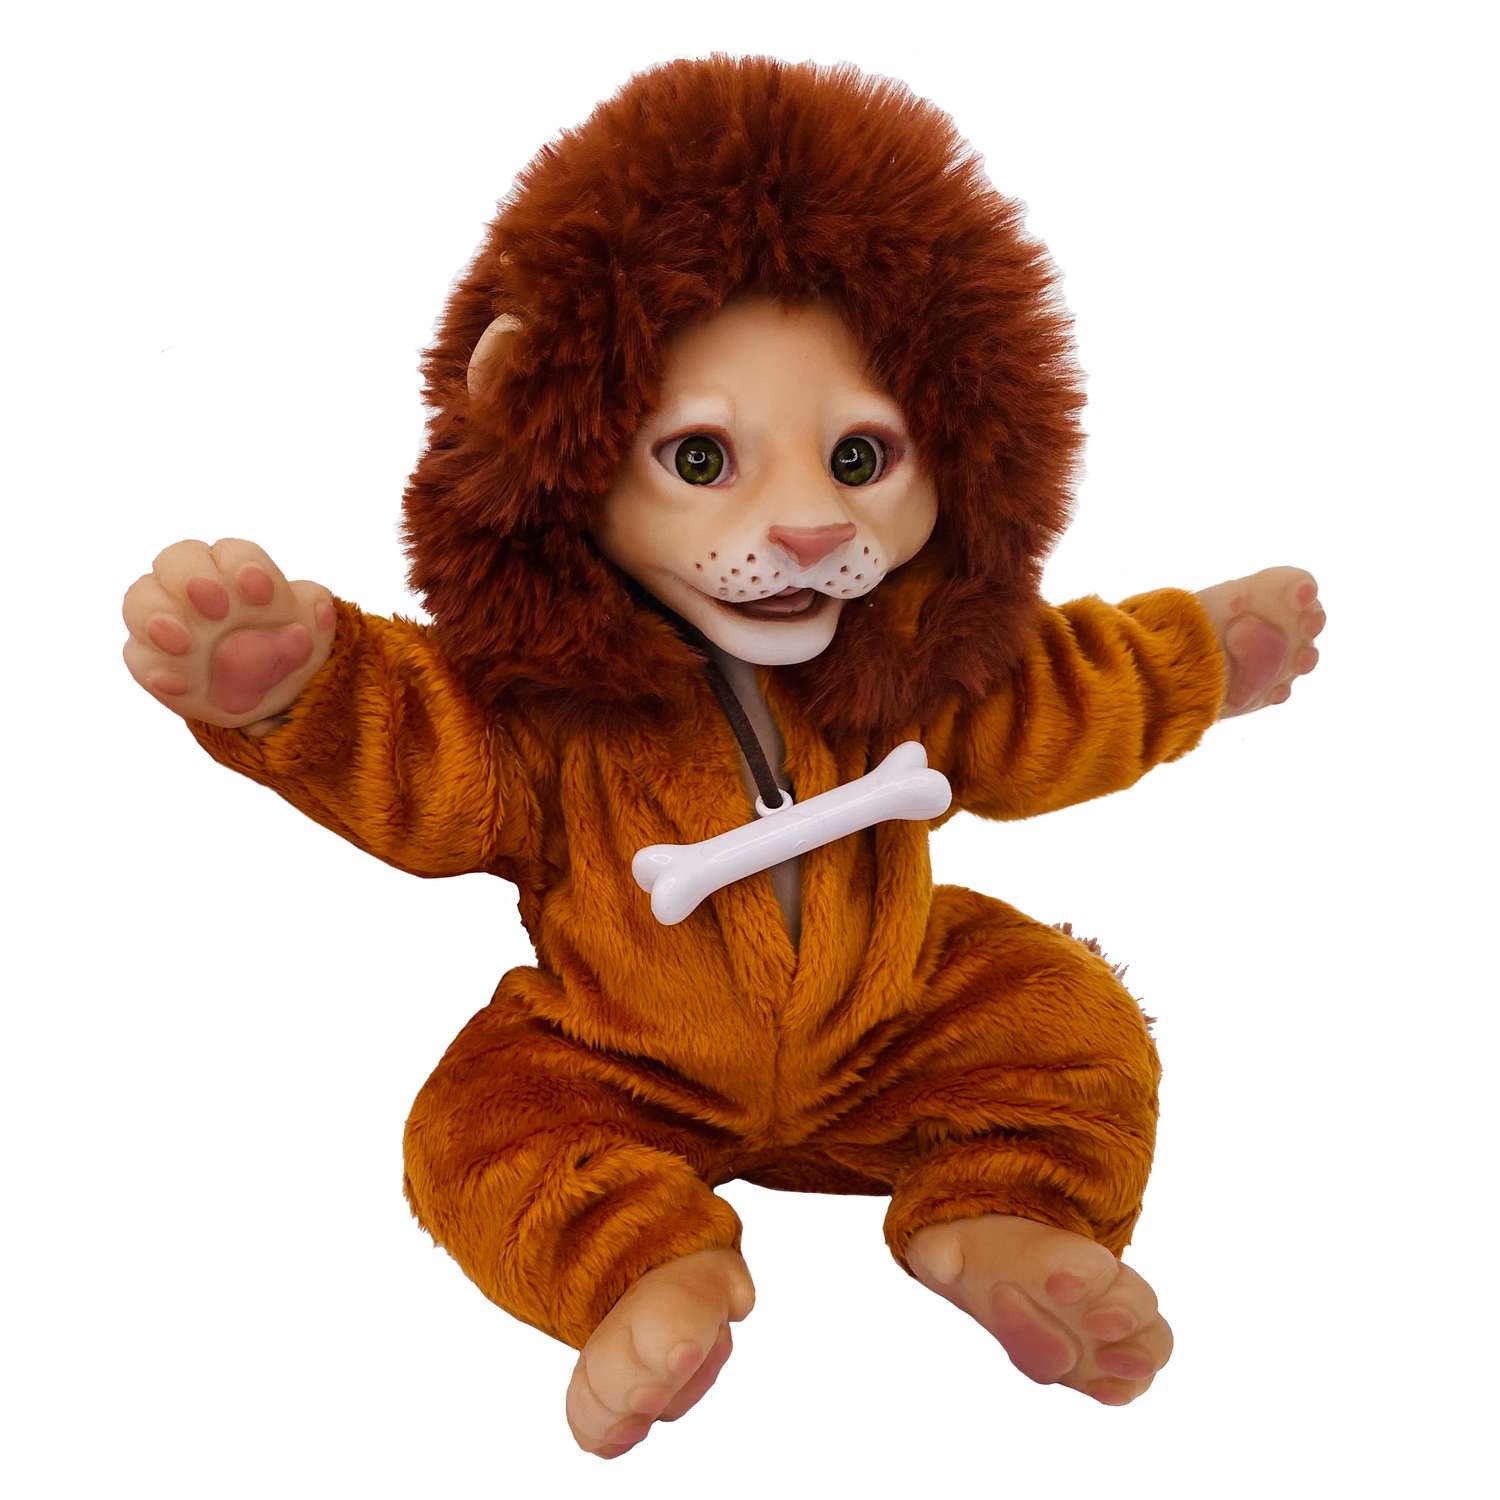 Одежда для игрушки льва Magic Manufactory Комбинезон Сочные джунгли А02 С02 0026 А02 С02 0026 - фото 2